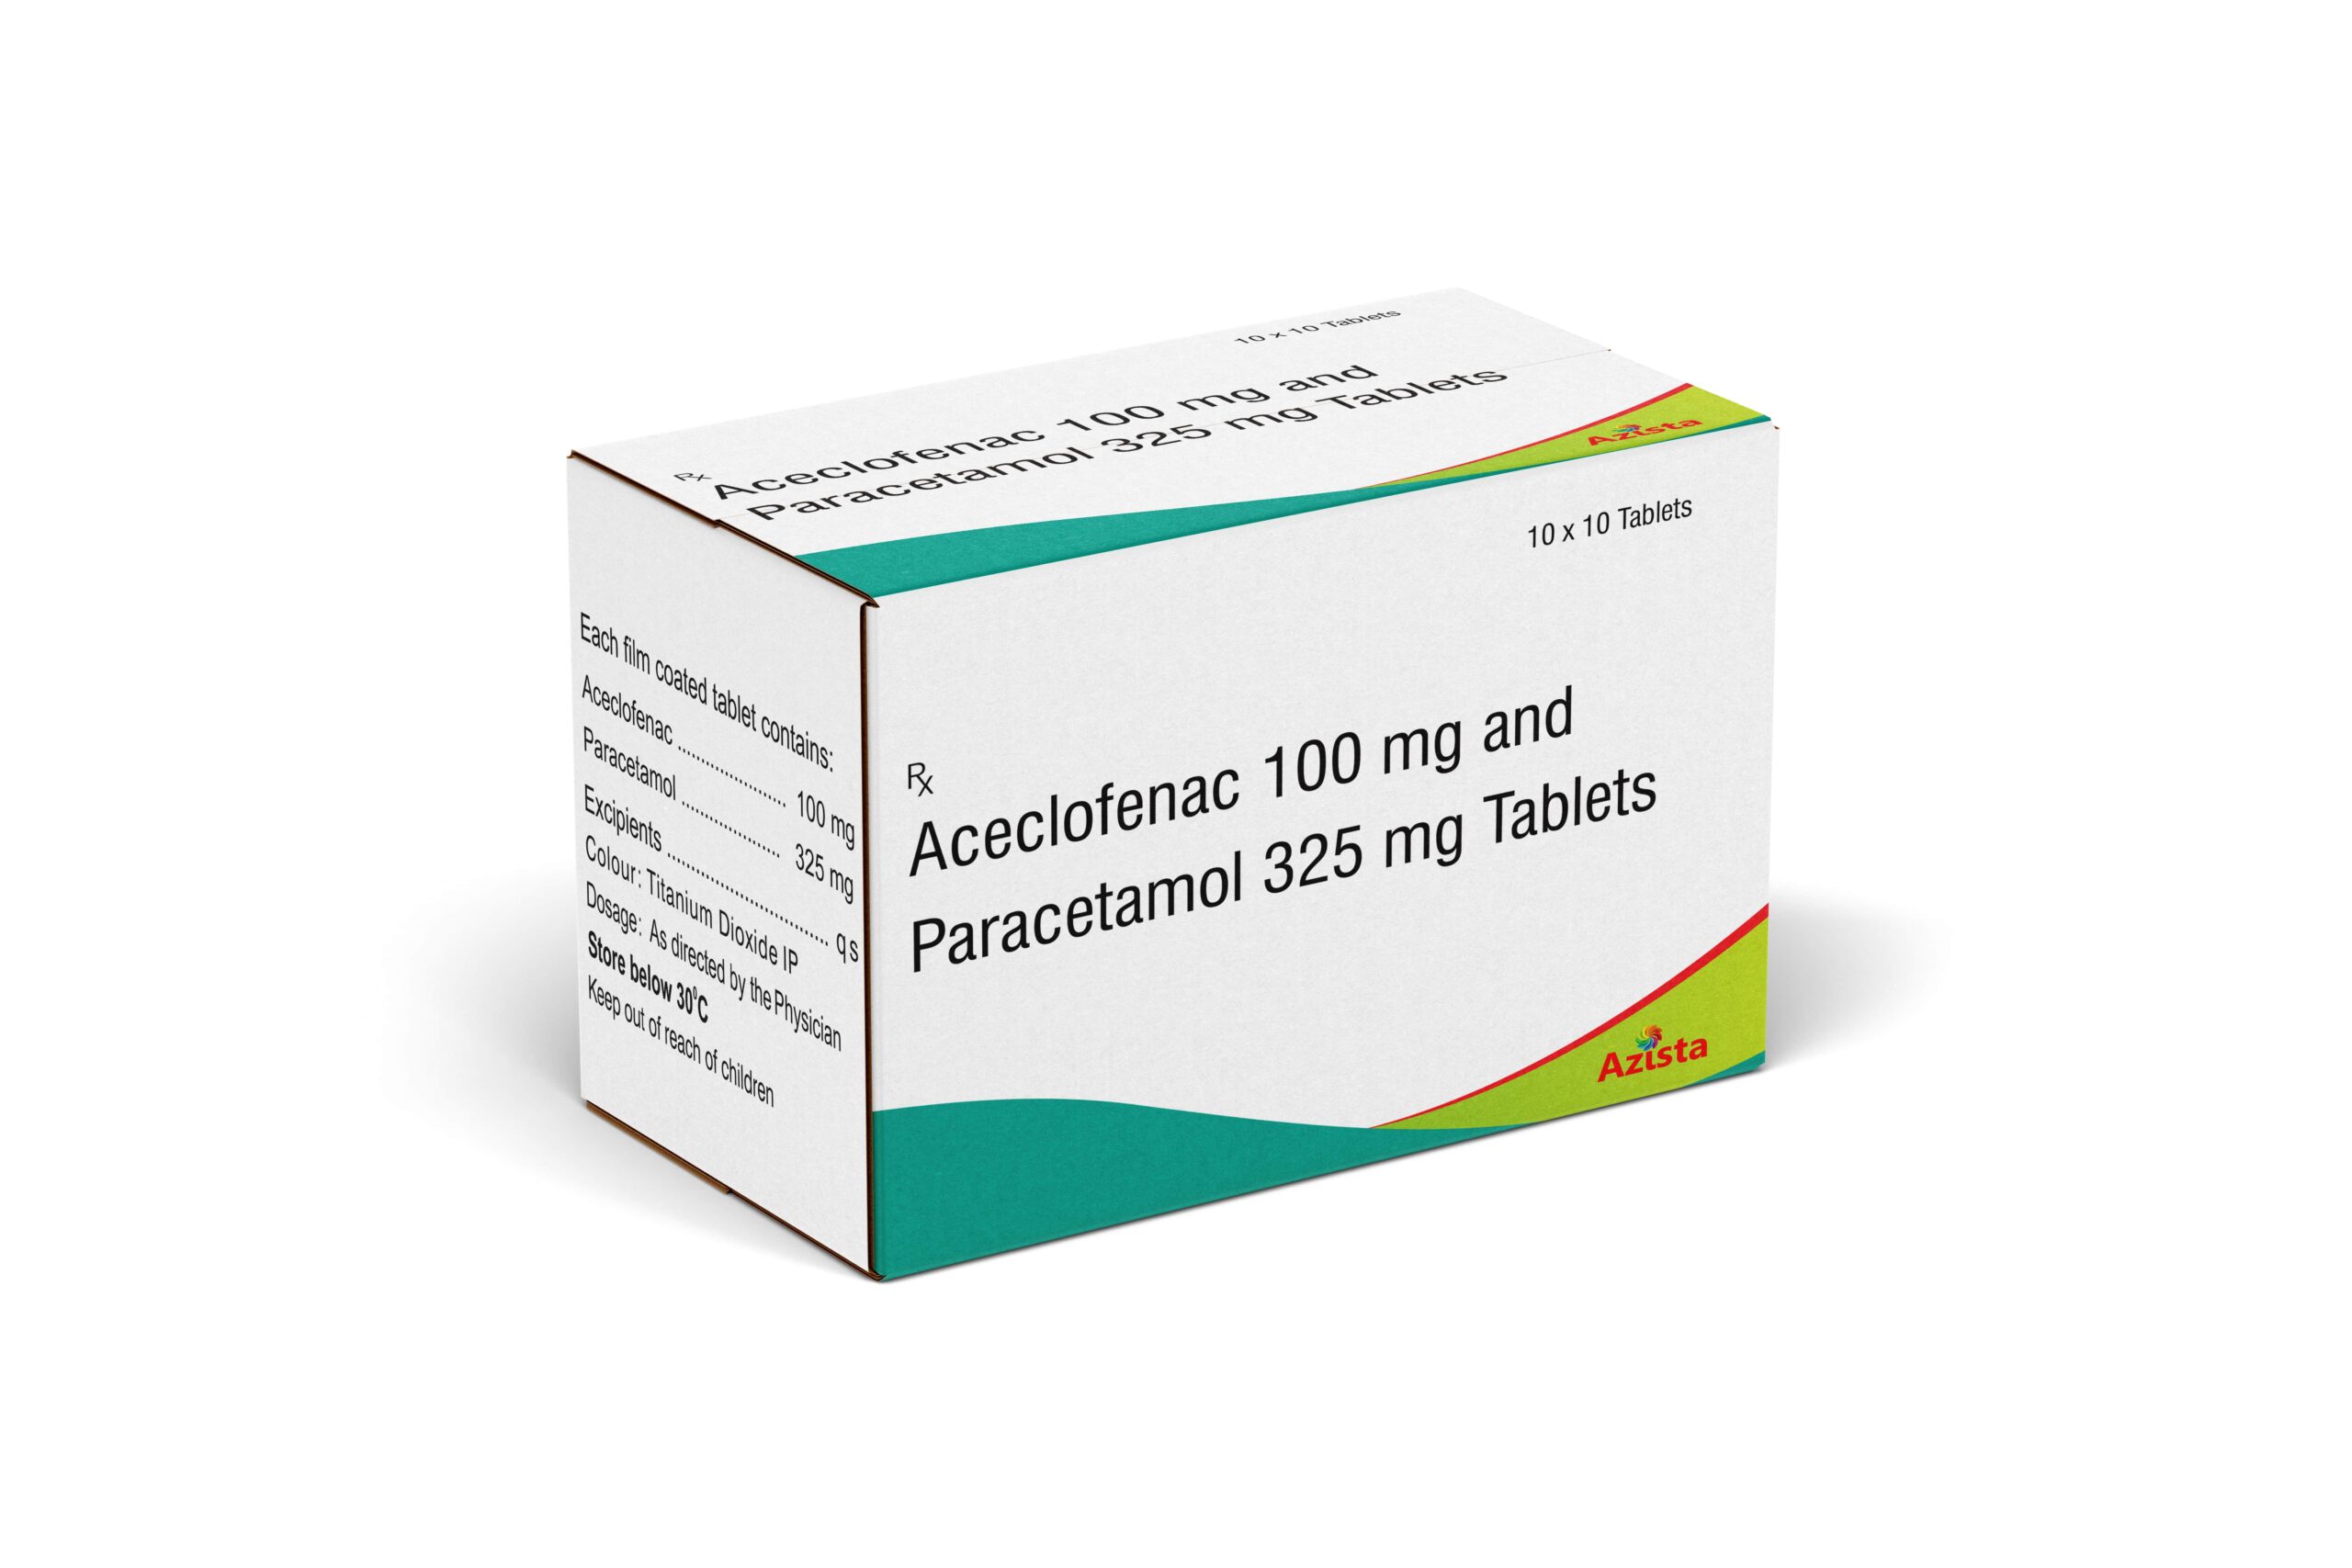 Aceclofenac 100mg and Paracetamol 325mg